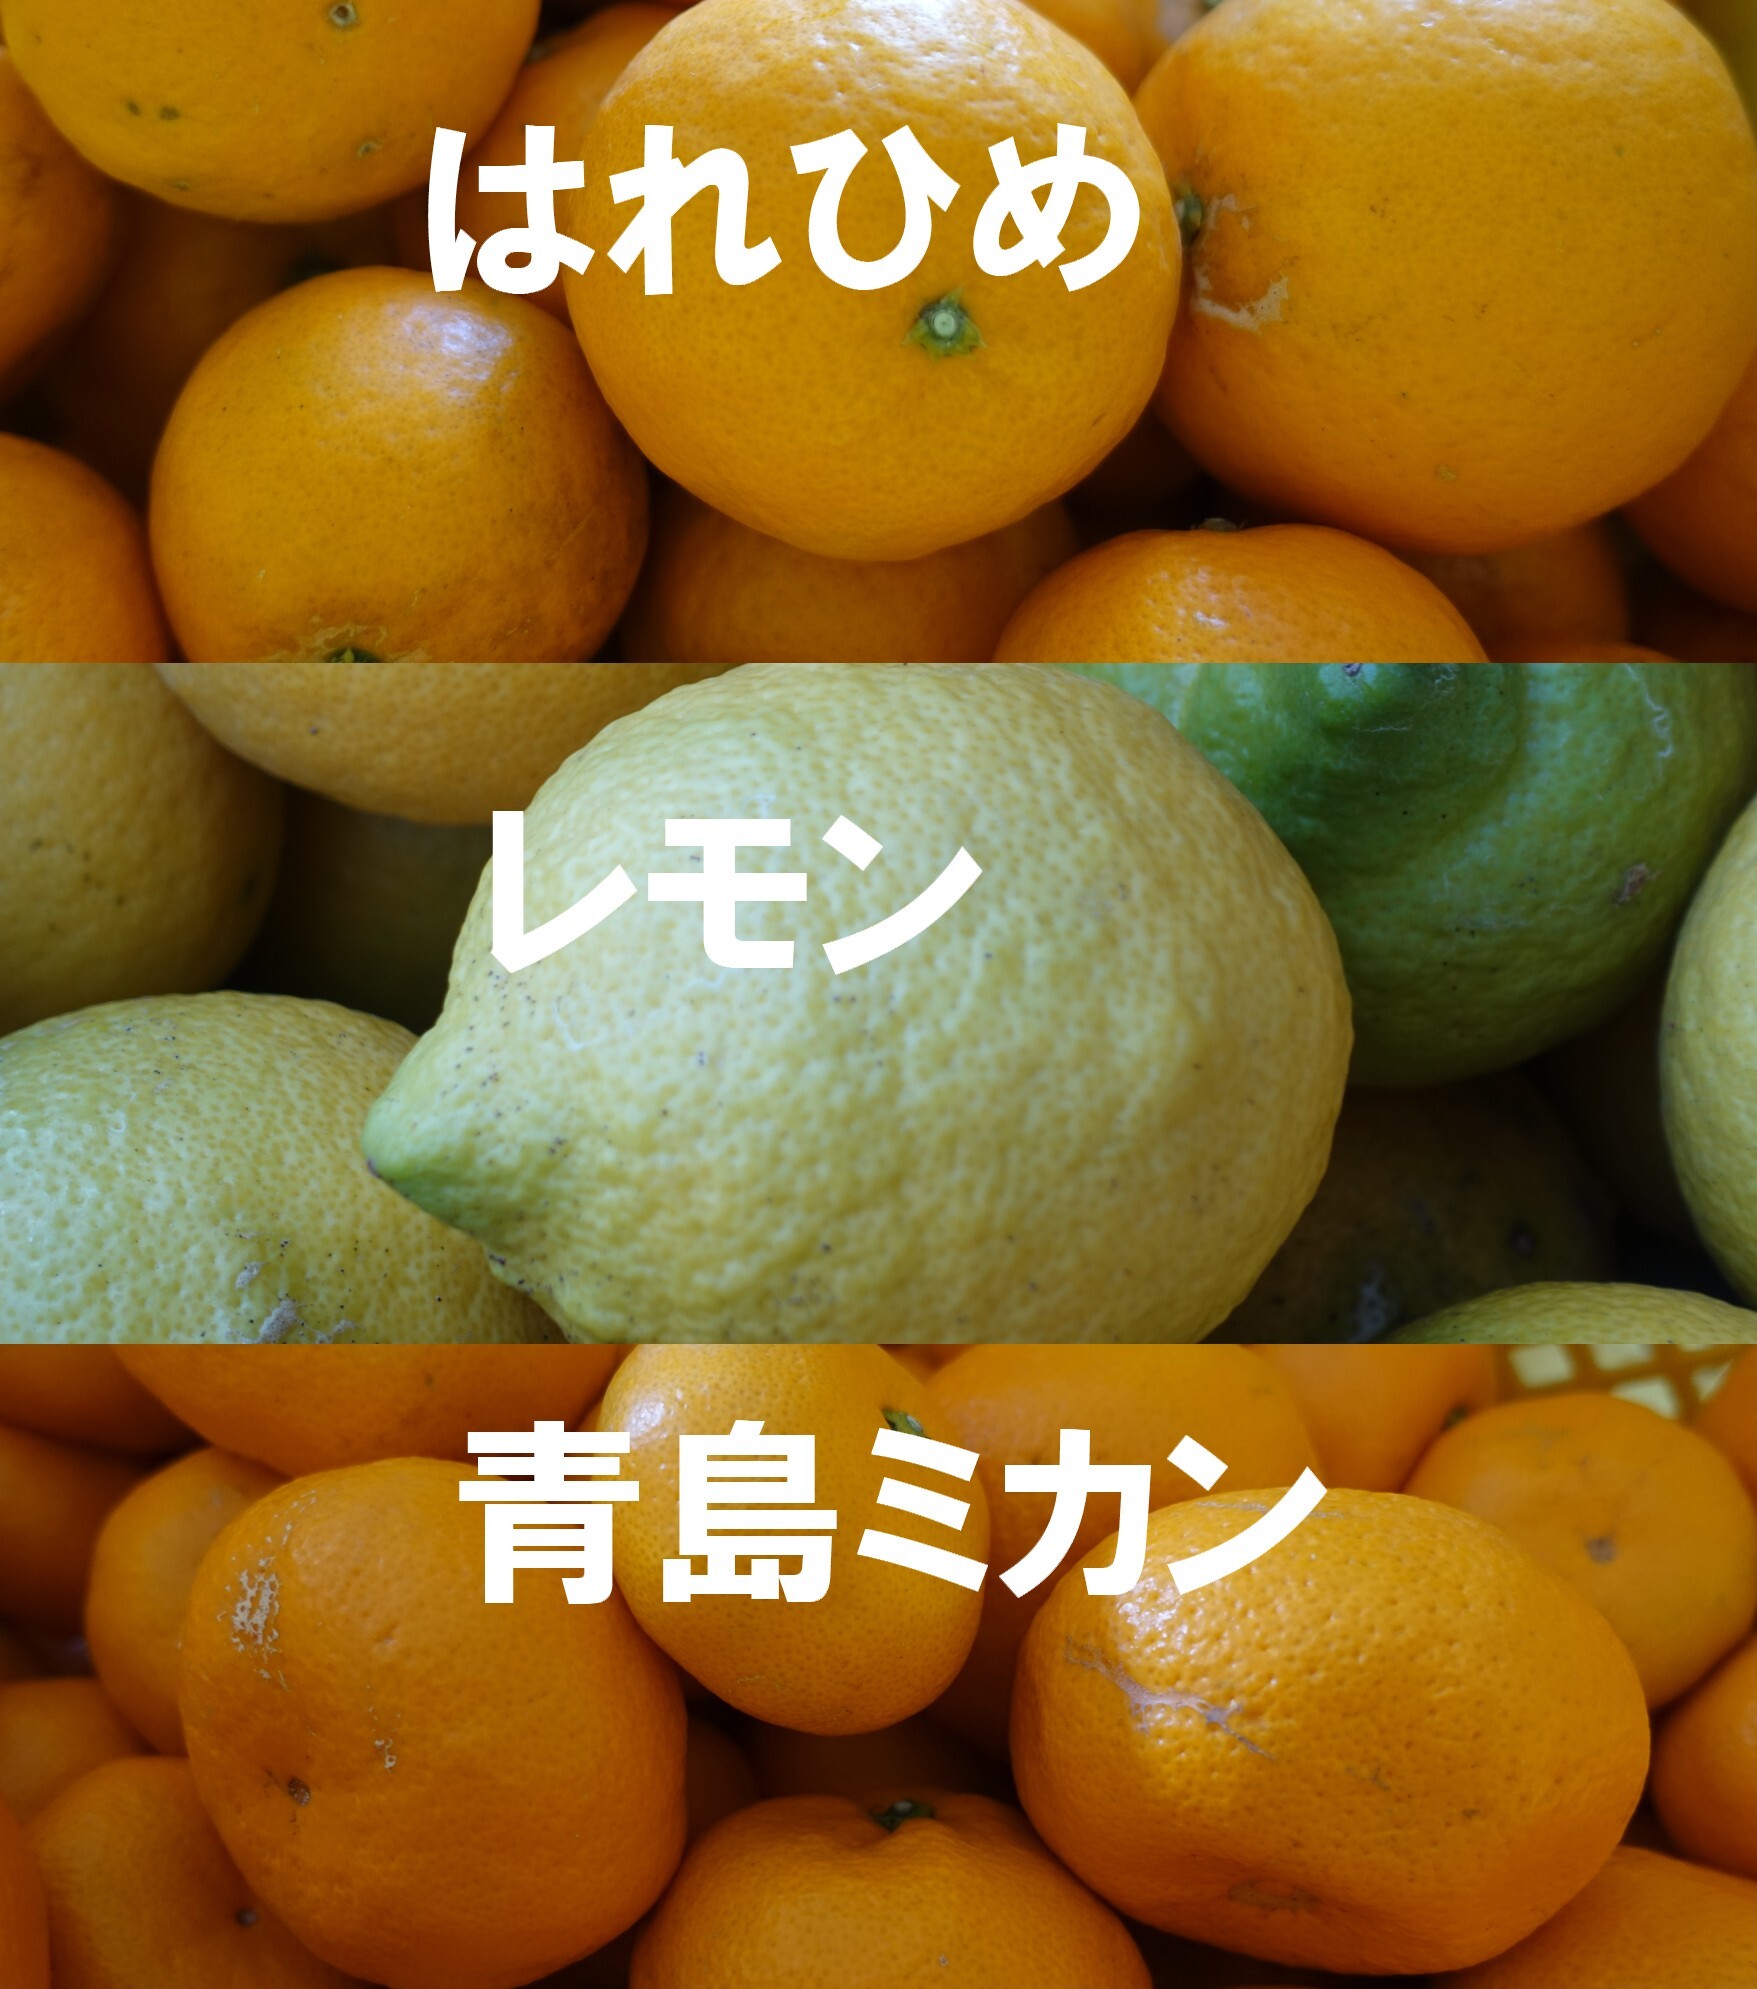 柑橘大好き はれひめ レモン 青島ミカン 家用 のセット 農家漁師から産地直送の通販 ポケットマルシェ